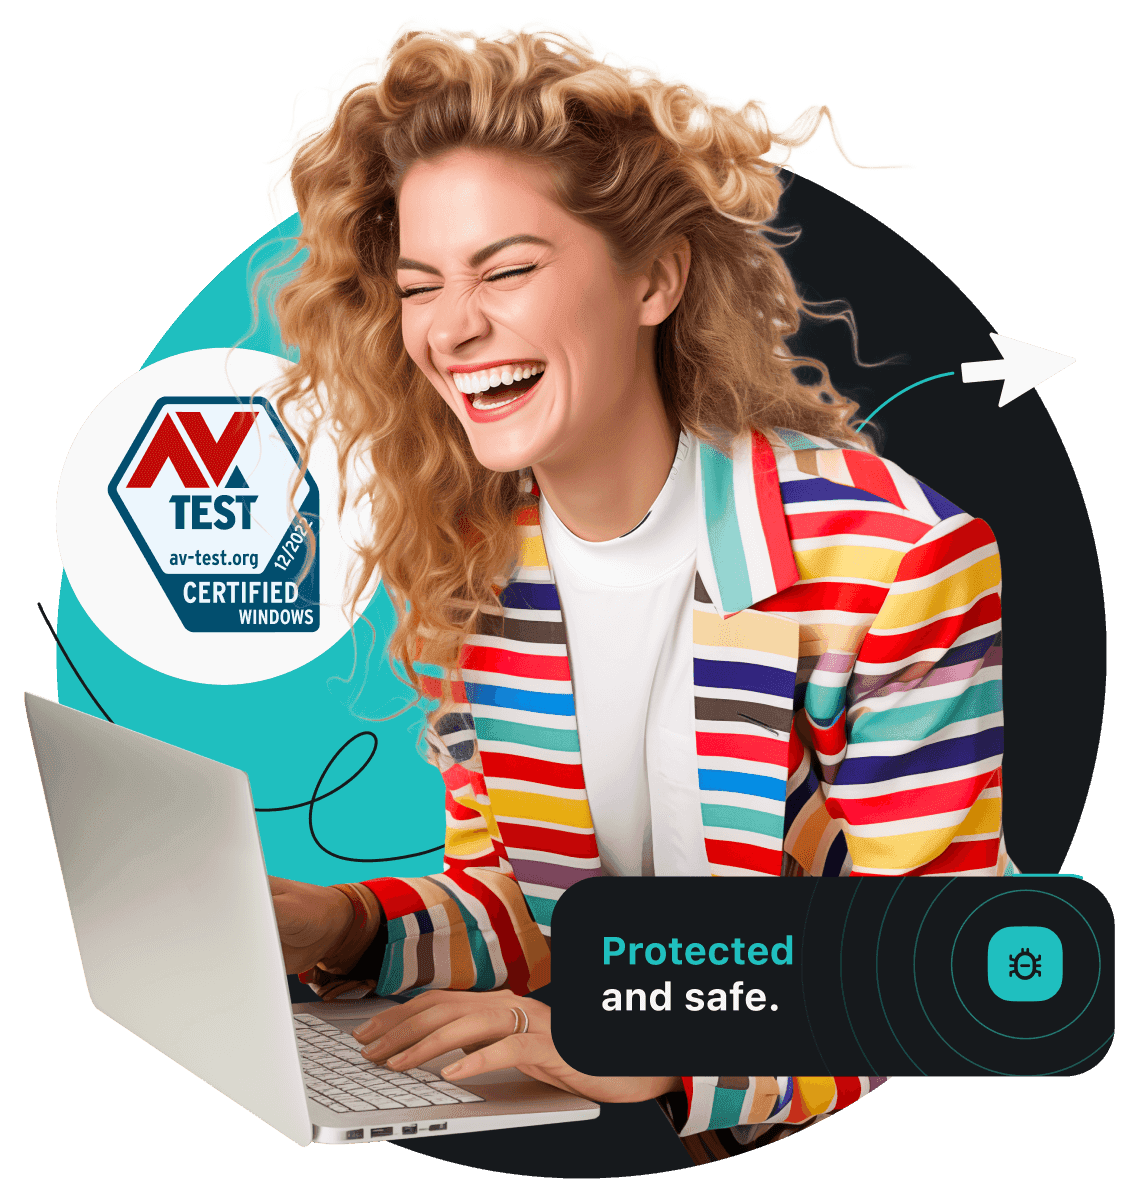 一个穿着彩色条纹夹克的女人面带笑容地在笔记本电脑上浏览网页。左侧显示 AV 检测认证徽章。